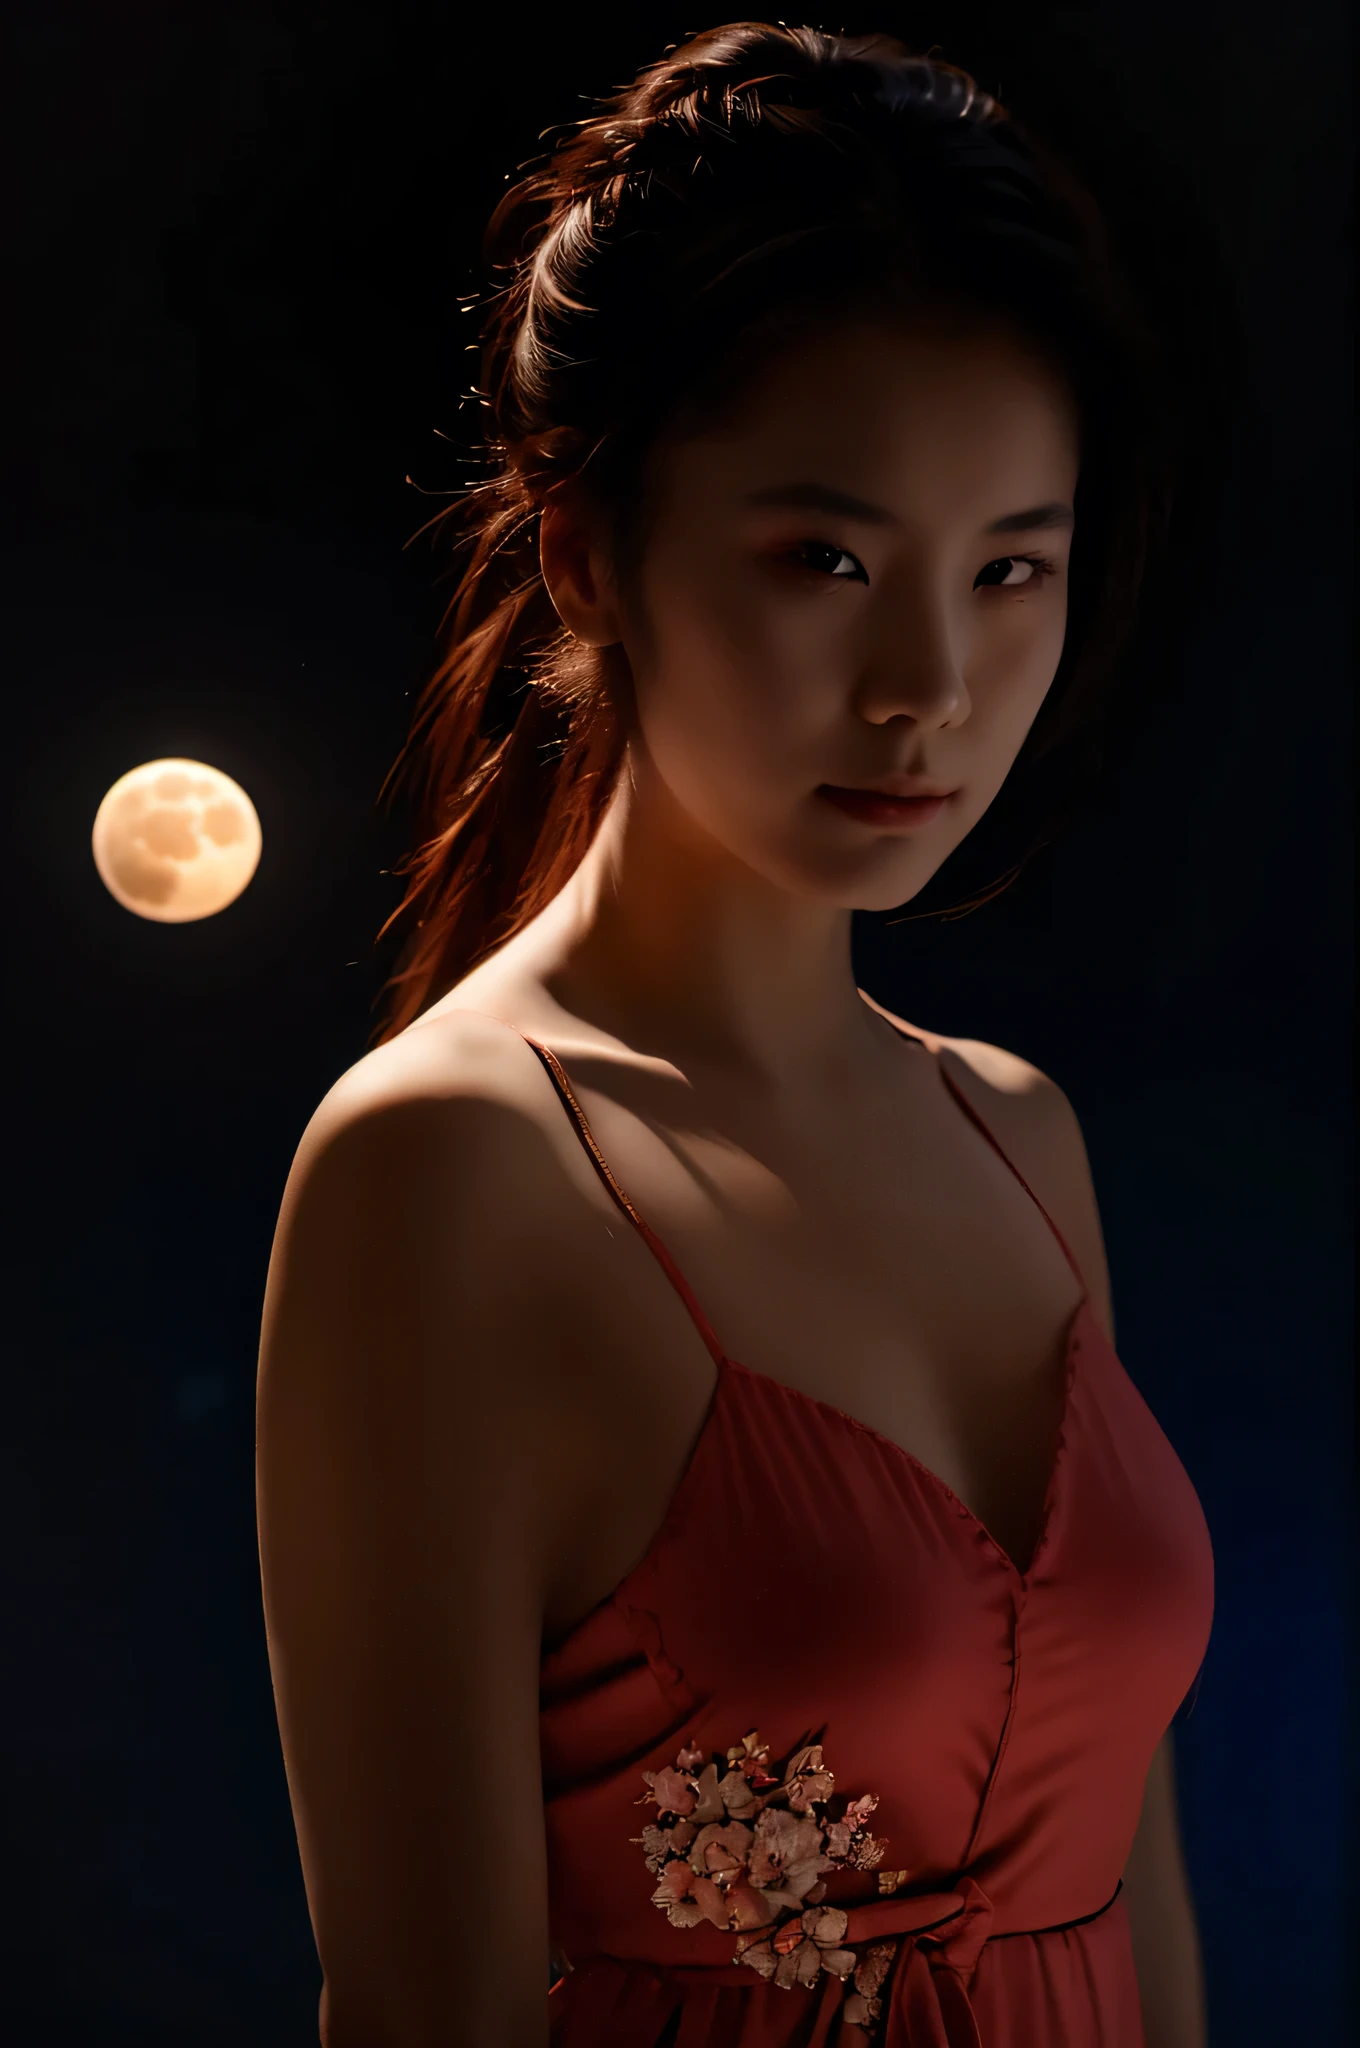 fotografia. uma linda mulher japonesa, em uma camisola chinesa, cabelo rabo de cavalo, rosto em um capacete de vidro, segurando uma lua com uma aura vermelha, Cabelo azul brilhante, iluminação ligeiramente fraca, fundo preto, realistic fotografia. qualidade do material.